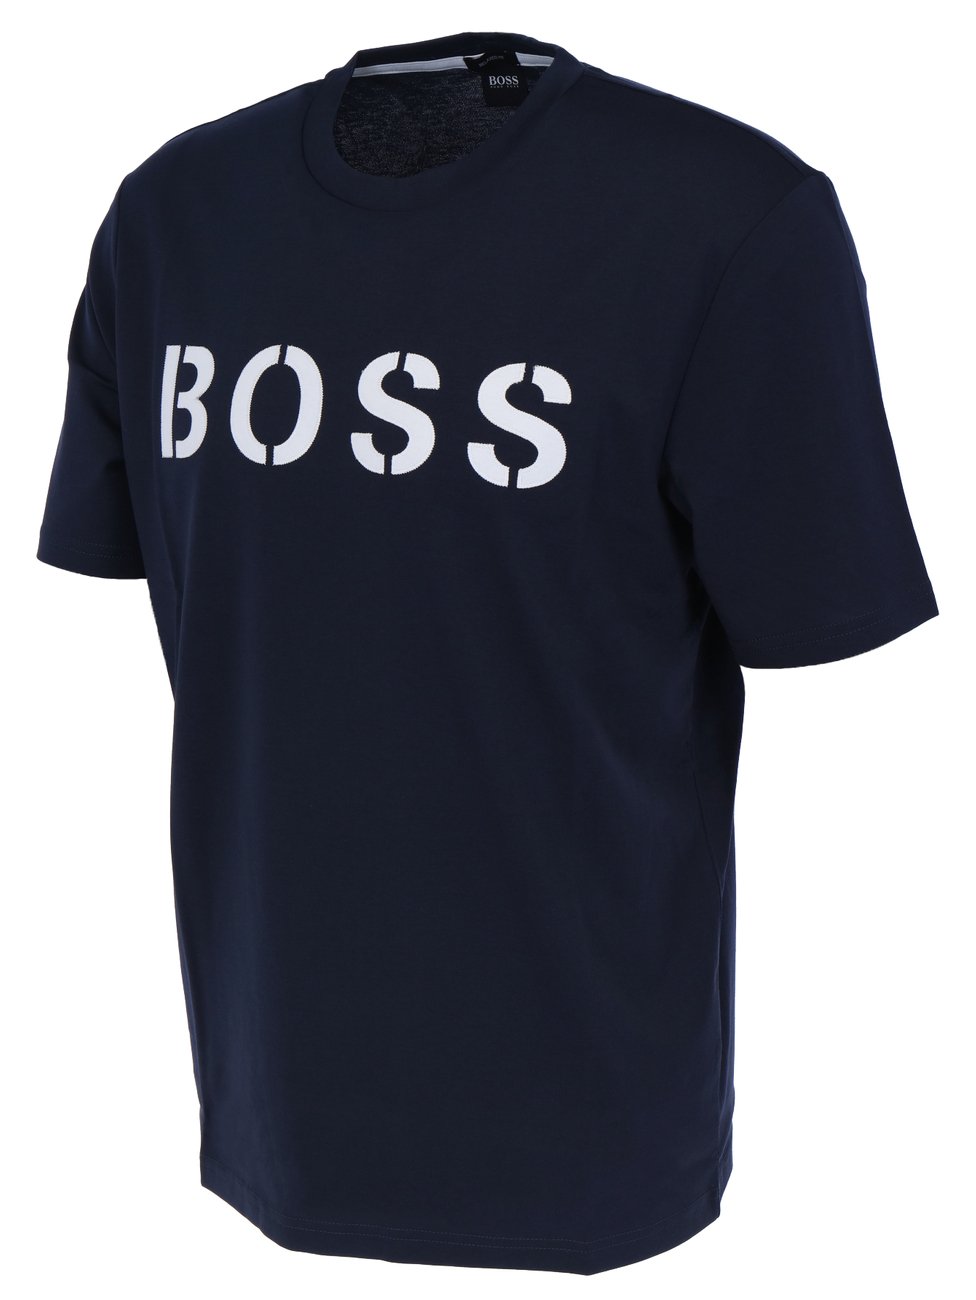 HUGO BOSS TETRY Herren T-Shirt Relaxed Fit - Hugo Boss - SAGATOO - 4021406440111